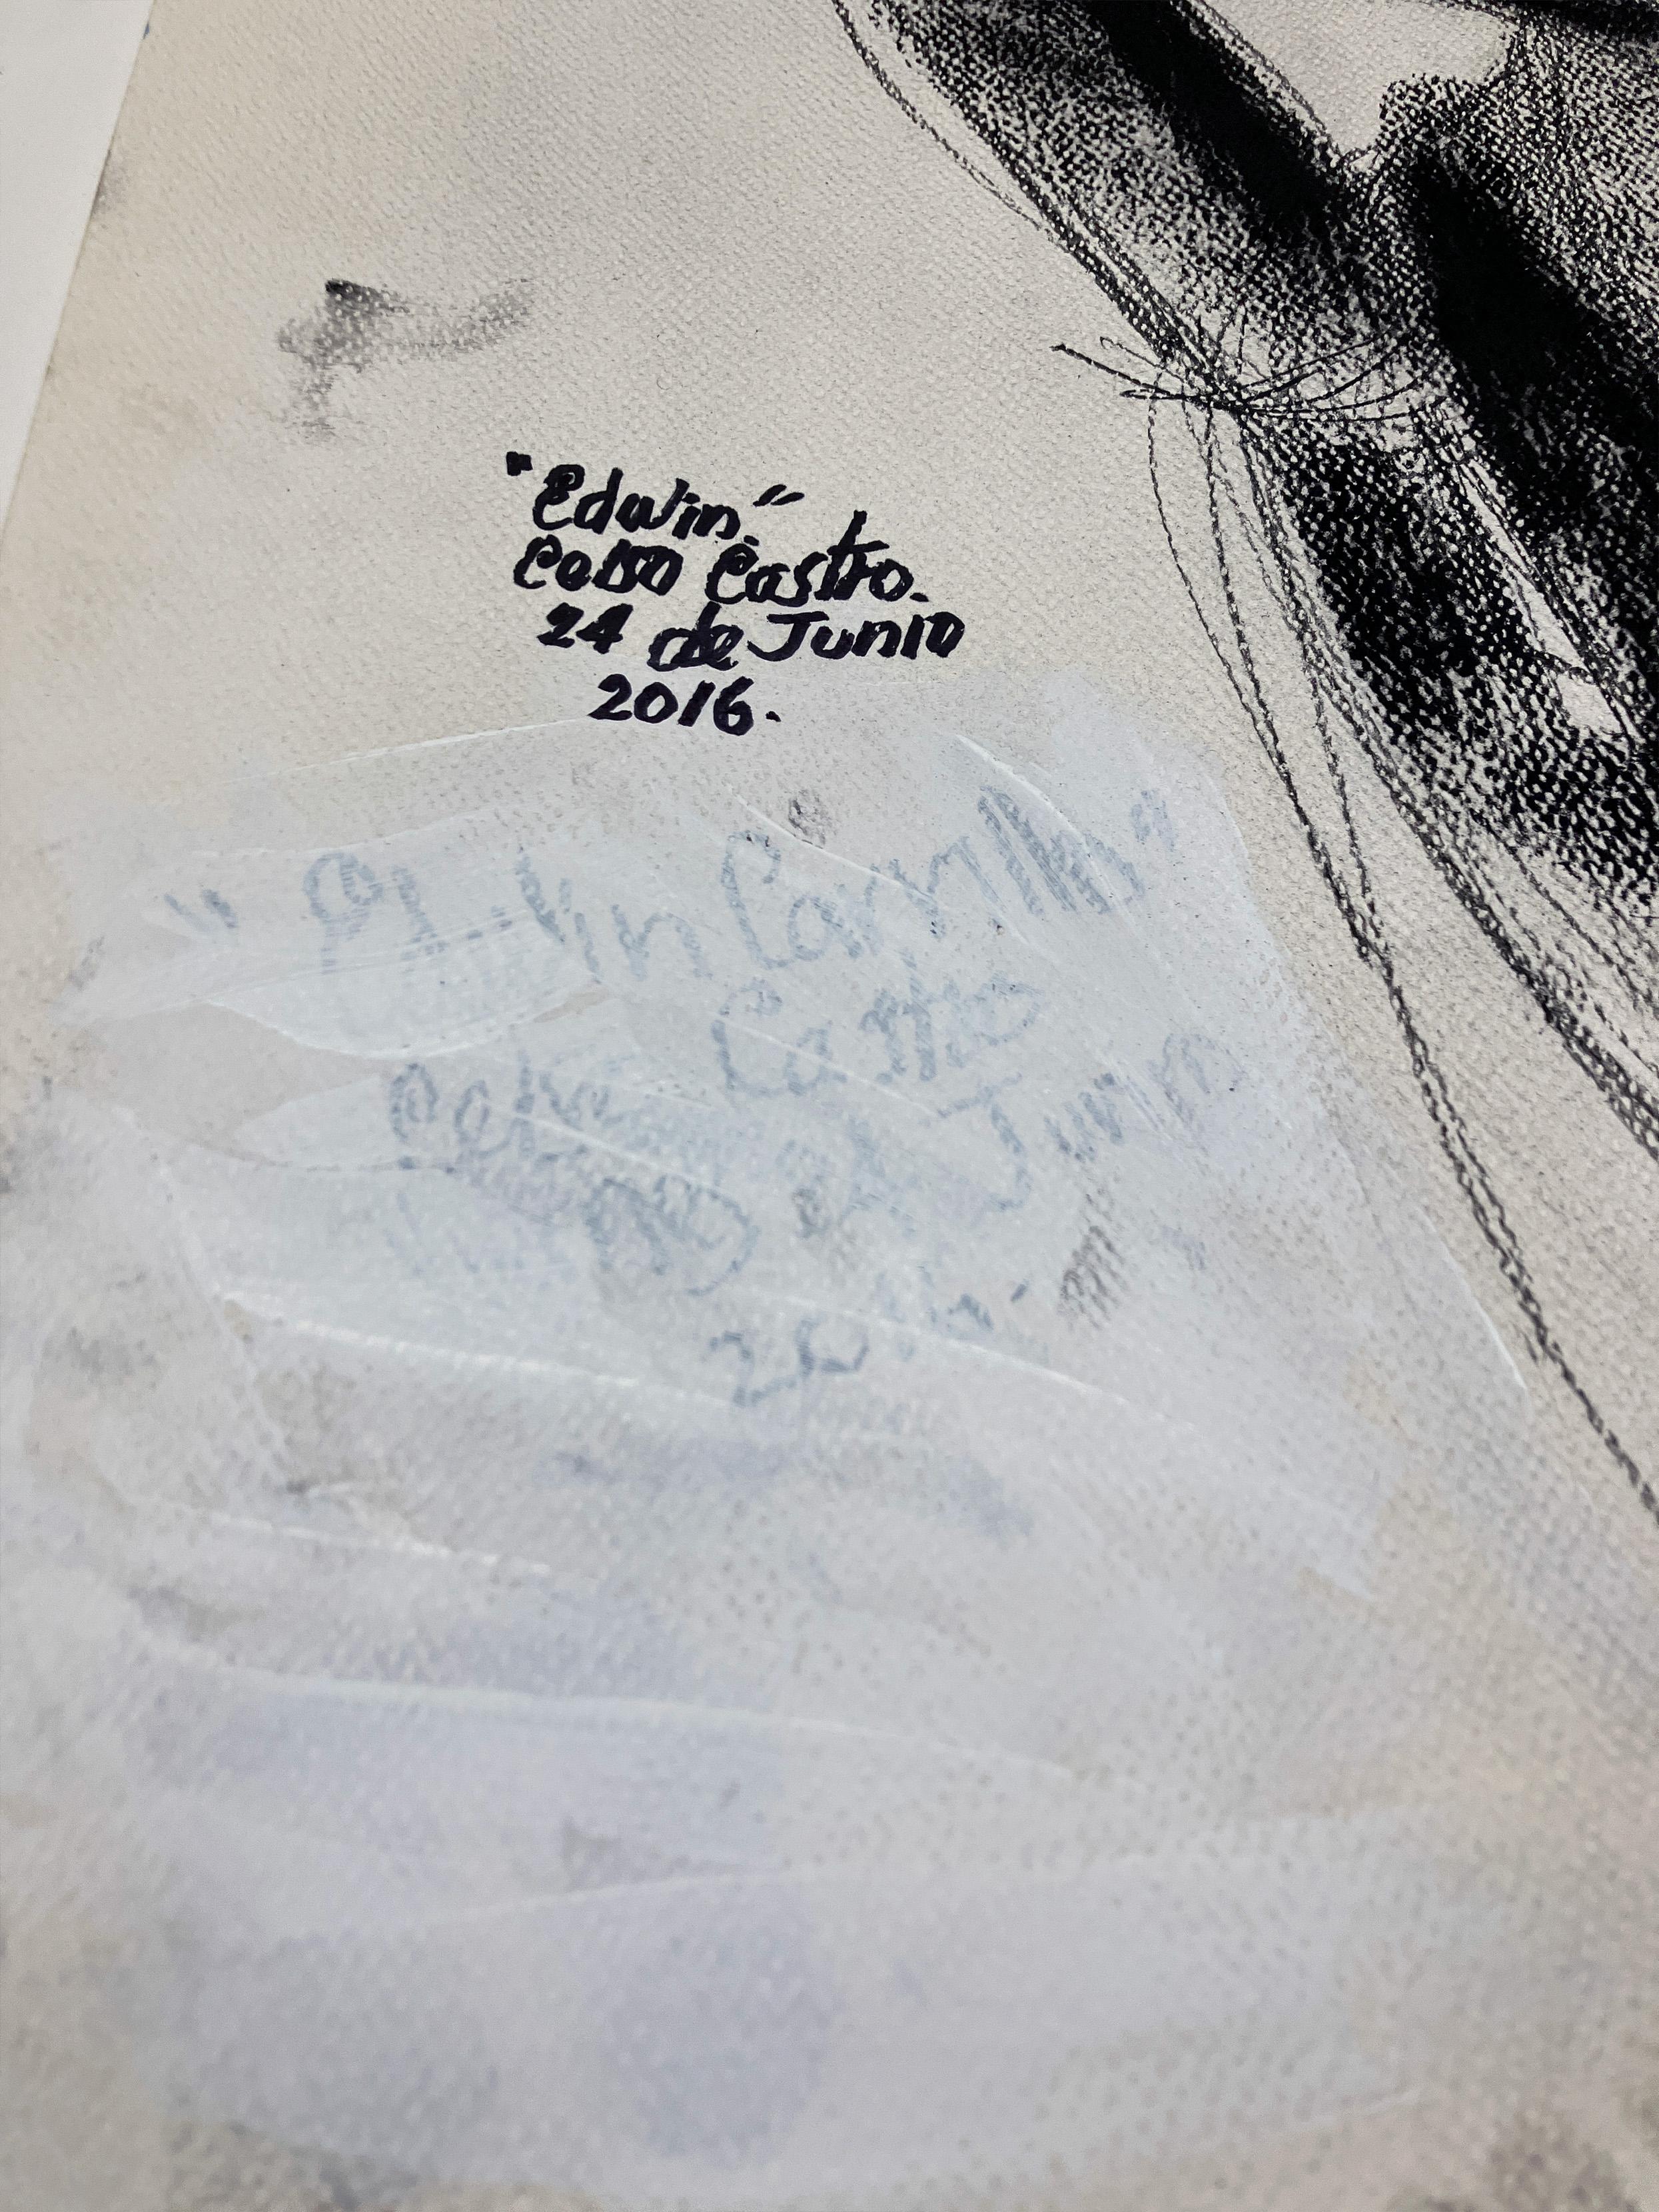 Edwin Carrillo, le 24 de junio, 2016 par Celso Castro
Fusain sur carton 
Taille de l'image : 40 H in. x 29 in. W 
(Effacer la signature avec de la peinture blanche)
Non encadré
____________
Indéfinies par le médium, les œuvres de Celso Castro